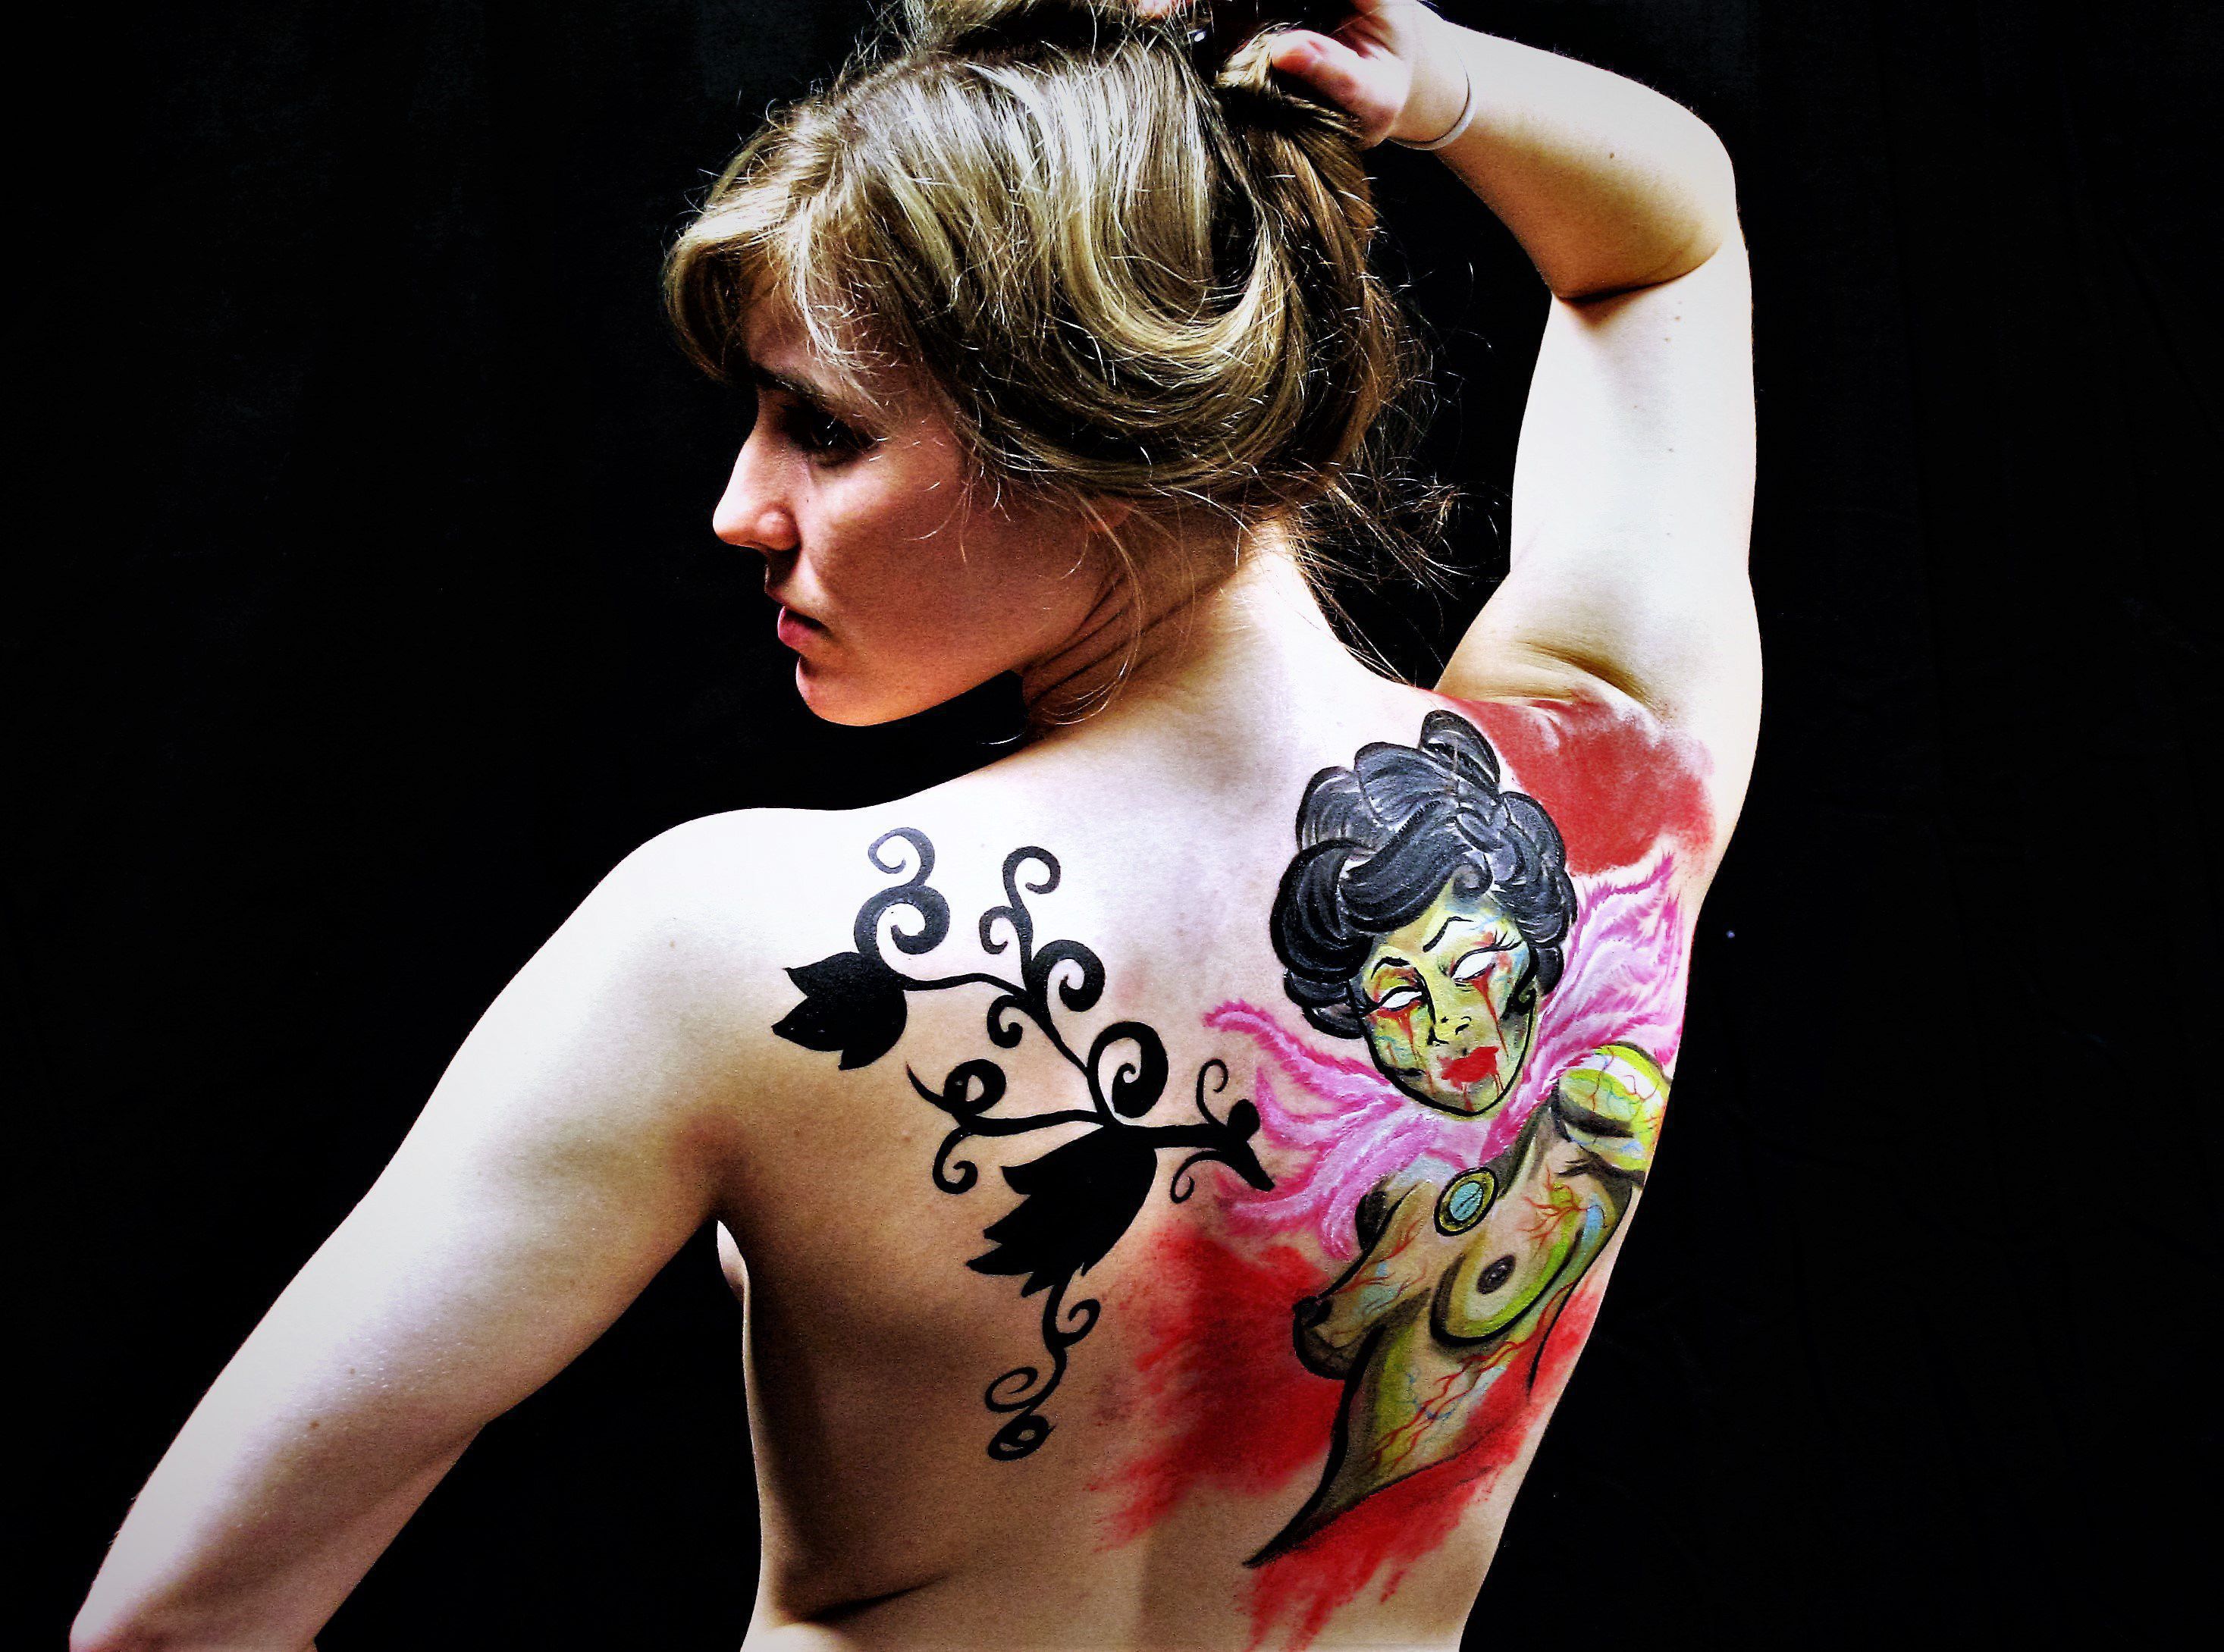 fond d'écran de peinture corporelle,tatouage,épaule,tatouage temporaire,corps humain,retour